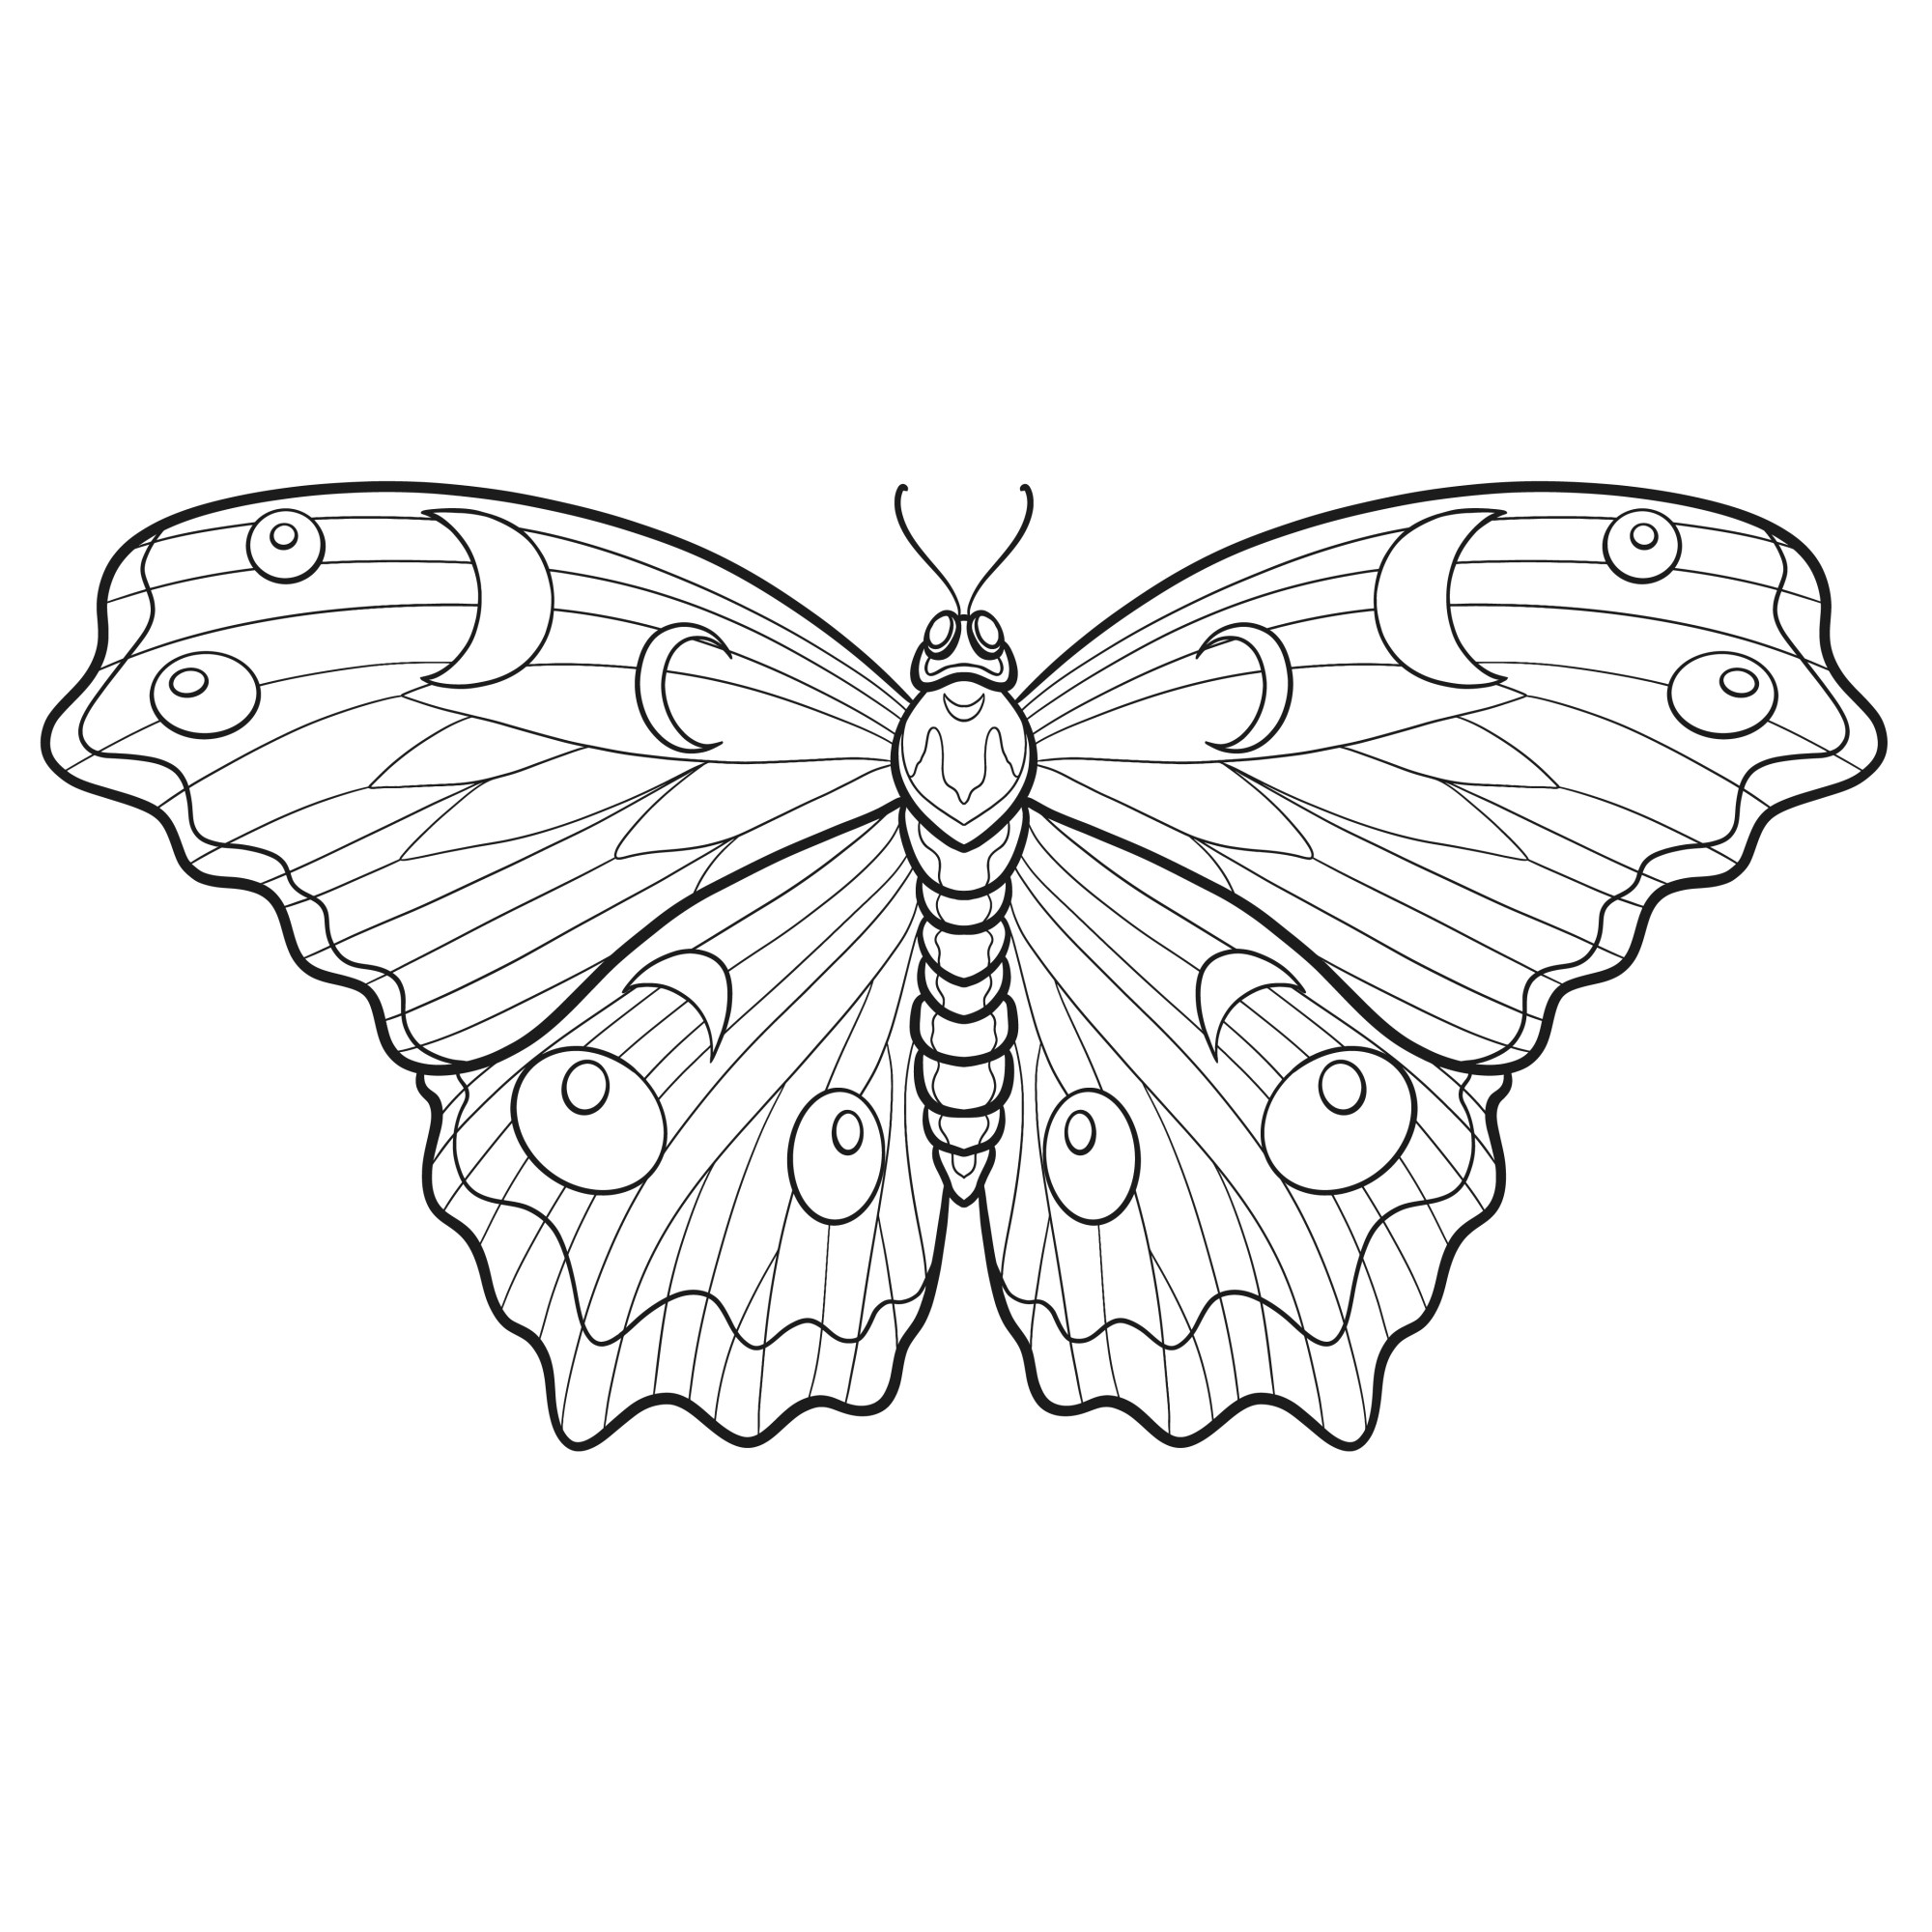 Раскраска для детей: бабочка сказочная